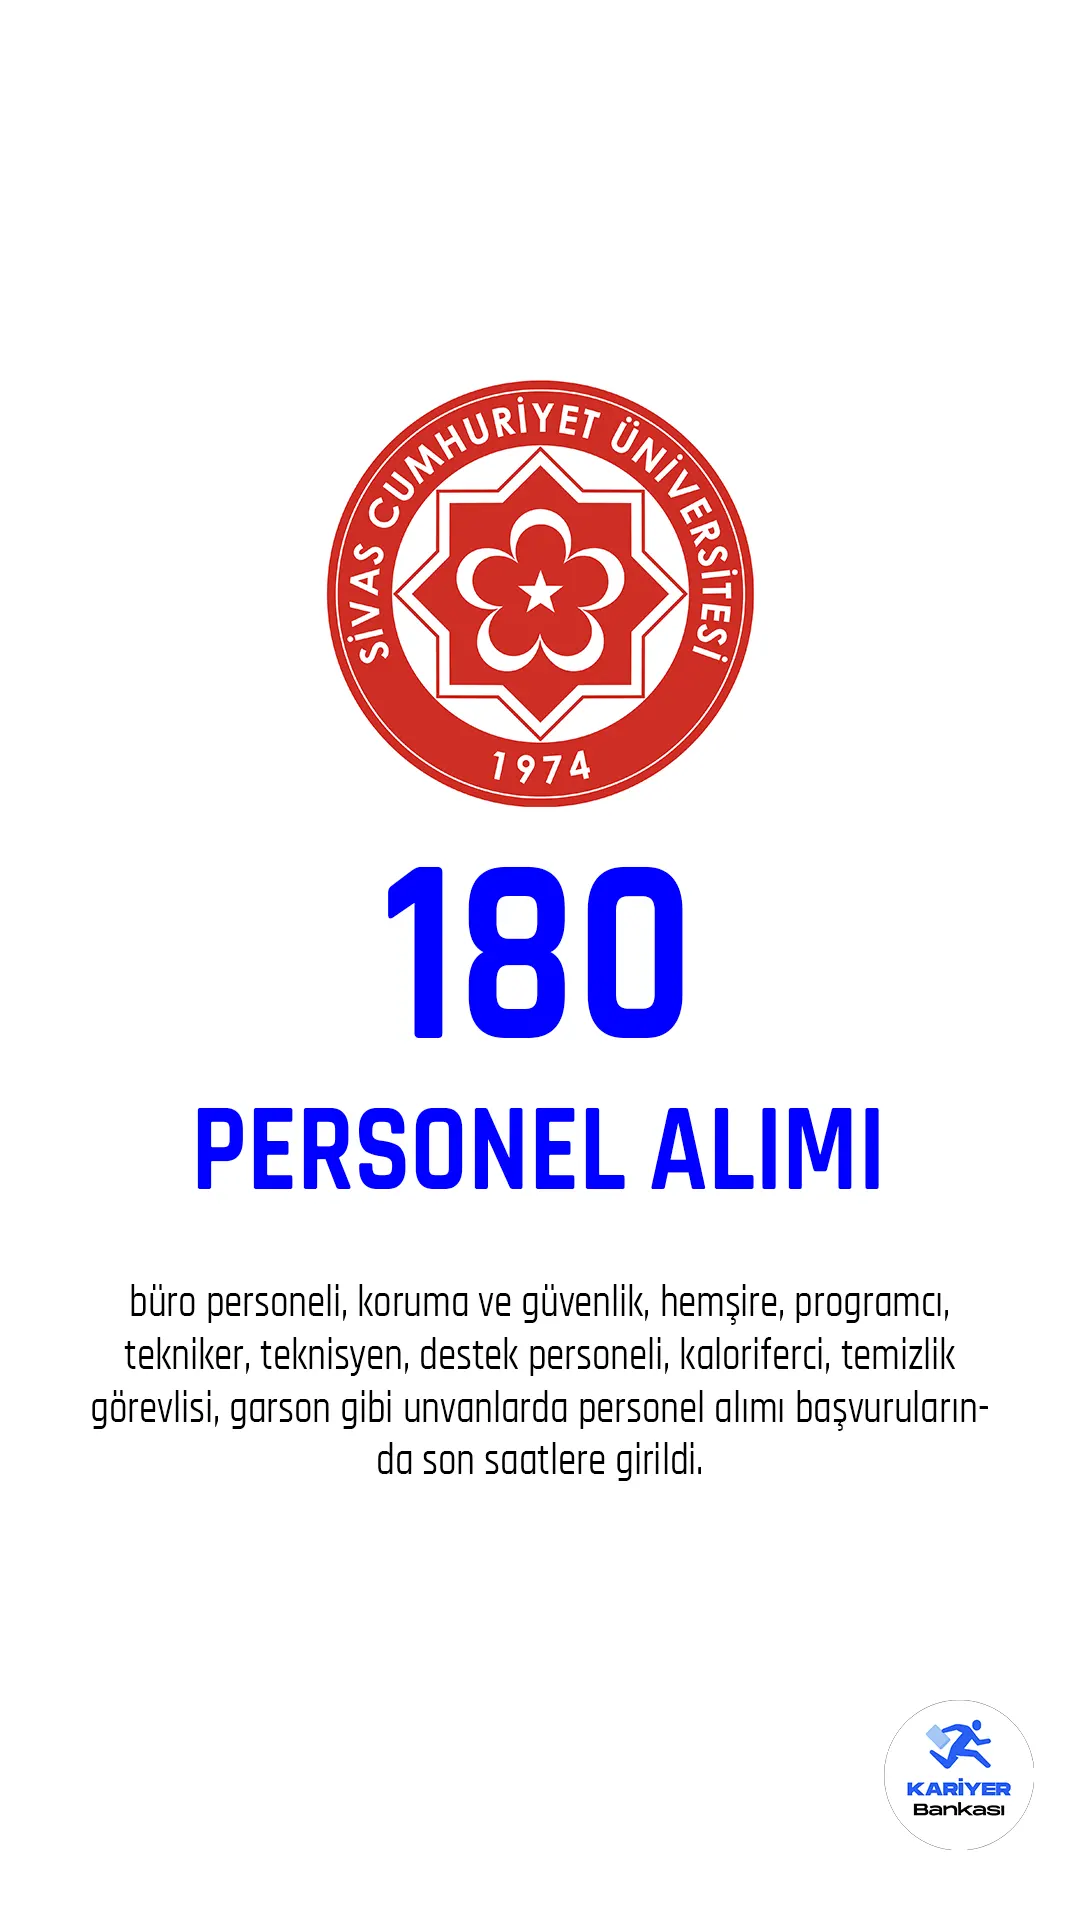 Sivas Cumhuriyet Üniversitesi personel alımı başvurularında son saatlere girildi.